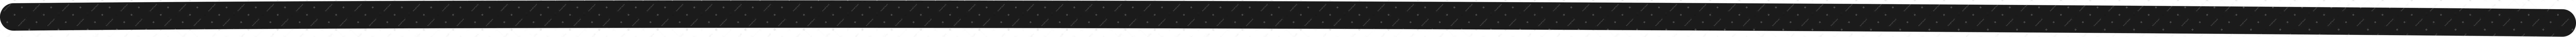 black floor line Illustration in PNG, SVG